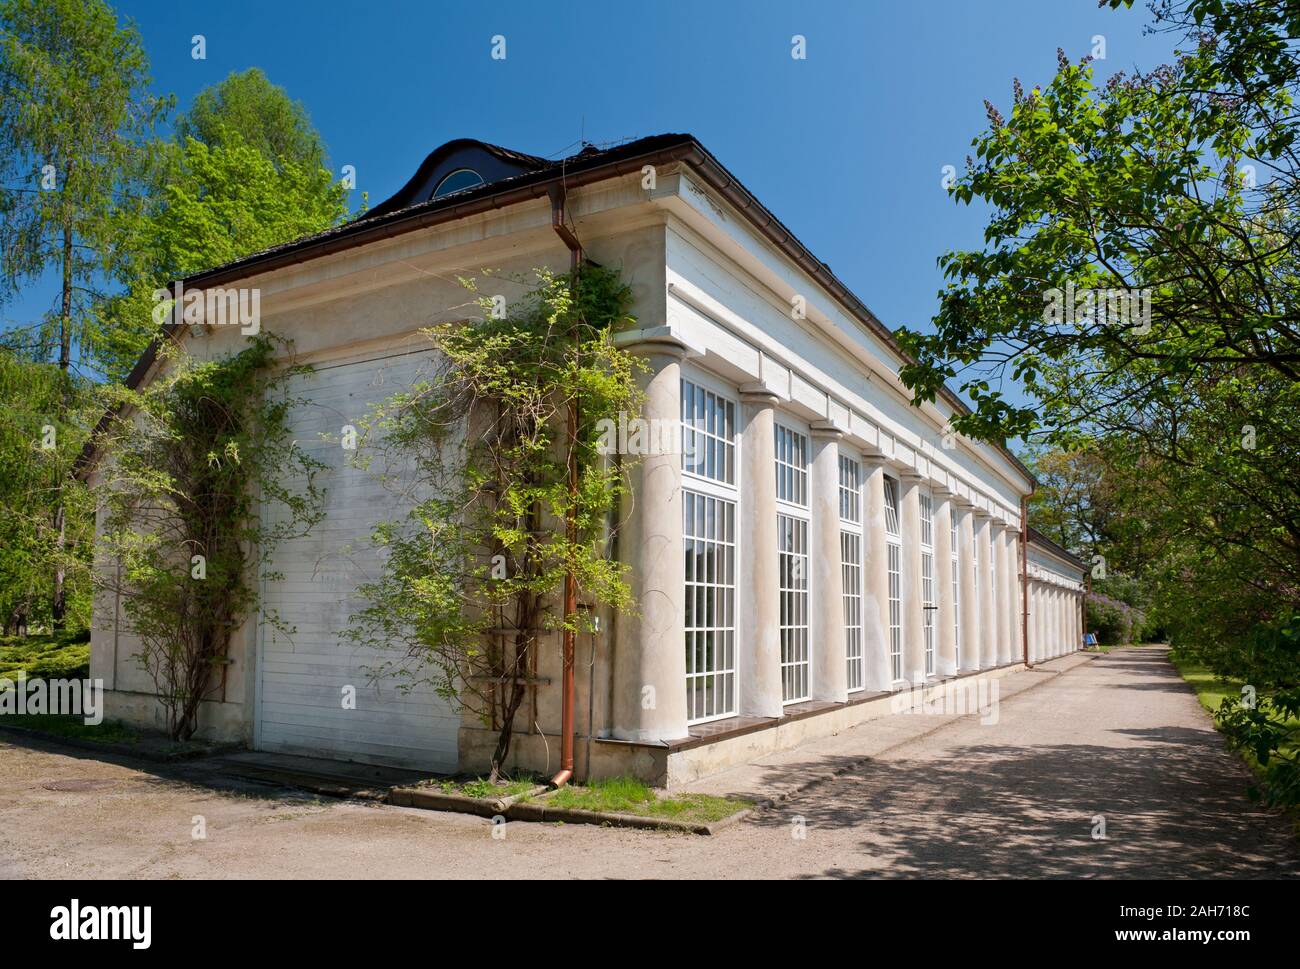 Alte Orangerie außen in Nieborów in Polen, Europa, Pflanzen wachsen in Sonnenlicht, Gebäude mit großen Fenstern in der breiten Ansicht, Besuch von touristischen Destinationen. Stockfoto